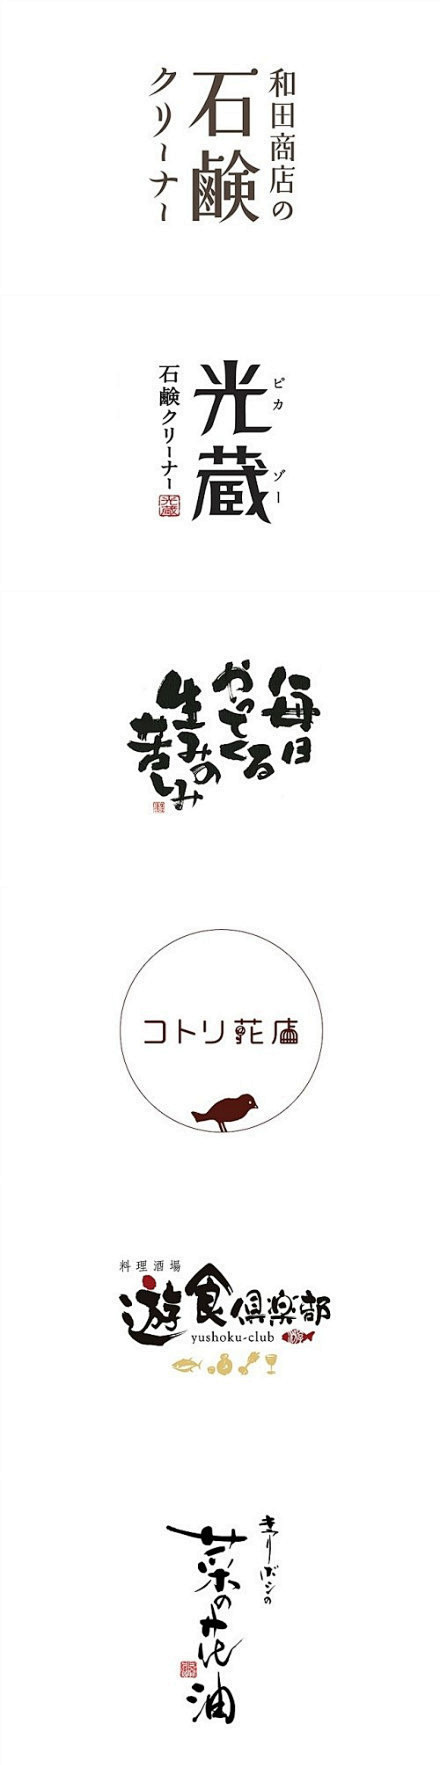 视觉同盟：日本字体设计 BY HANY